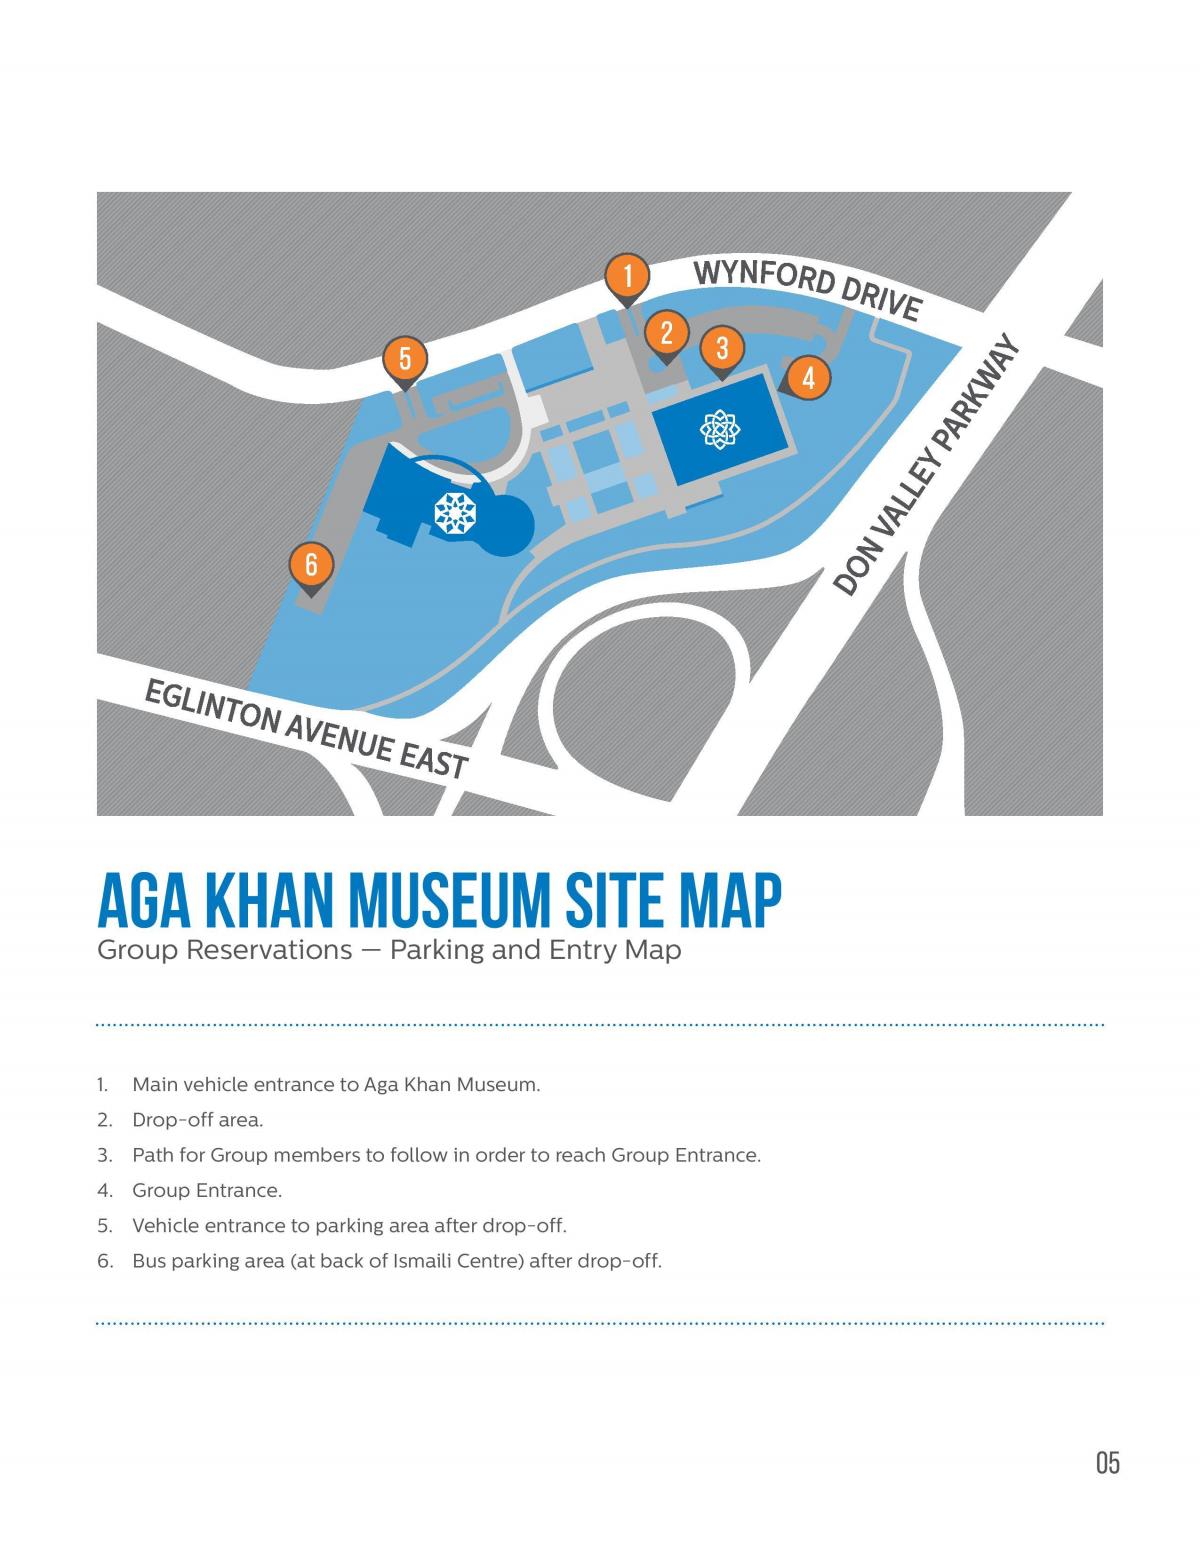 Harta e Aga Khan muze